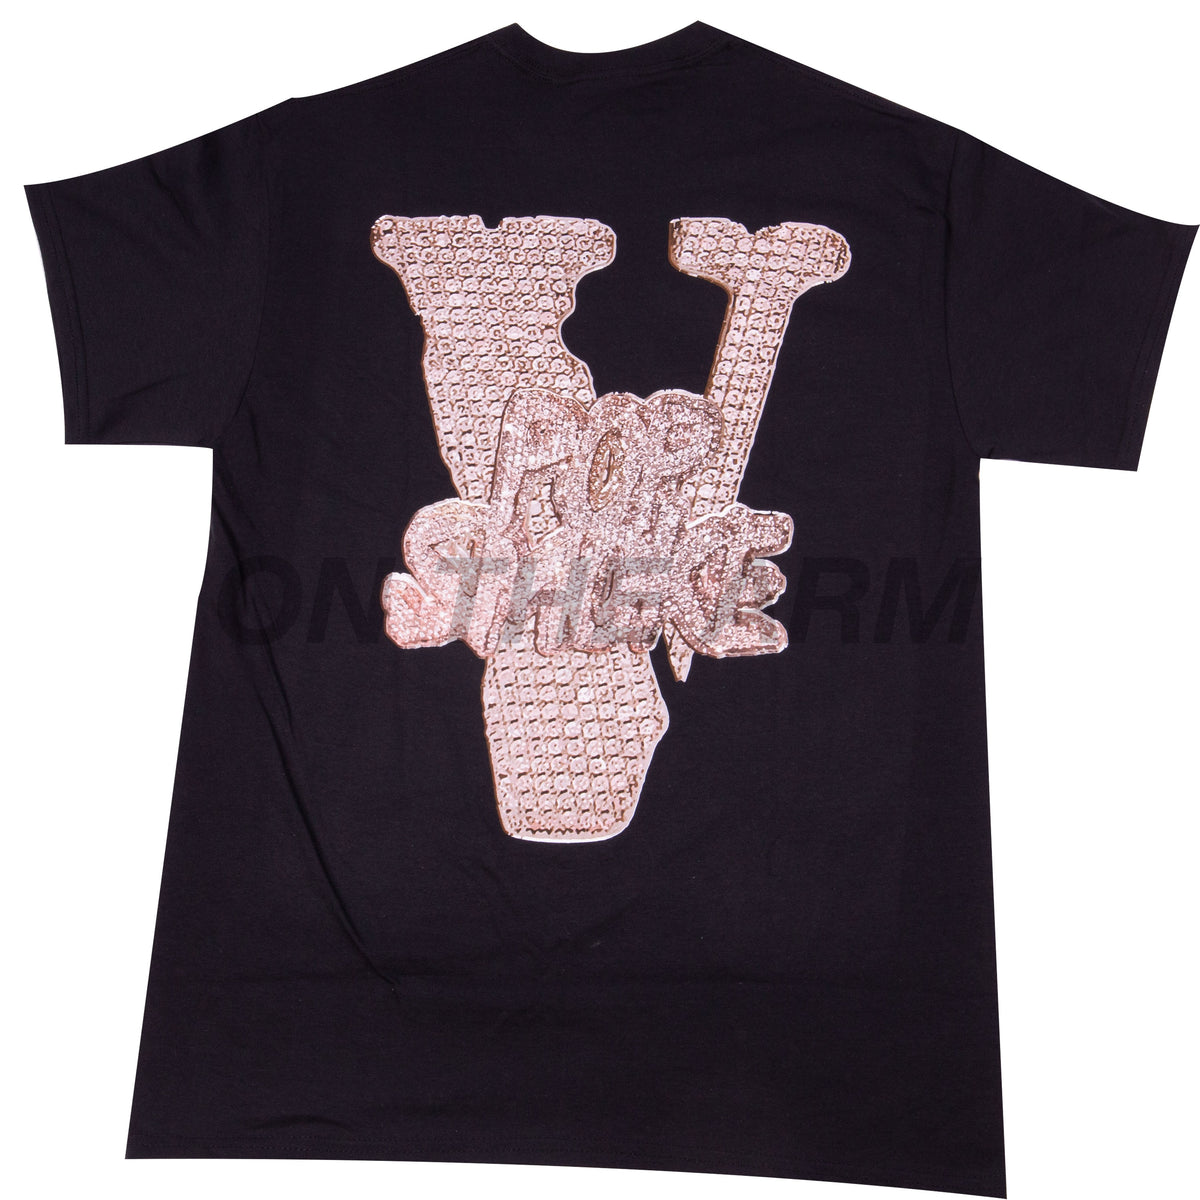 Vlone X Pop Smoke T-Shirt - Prayer